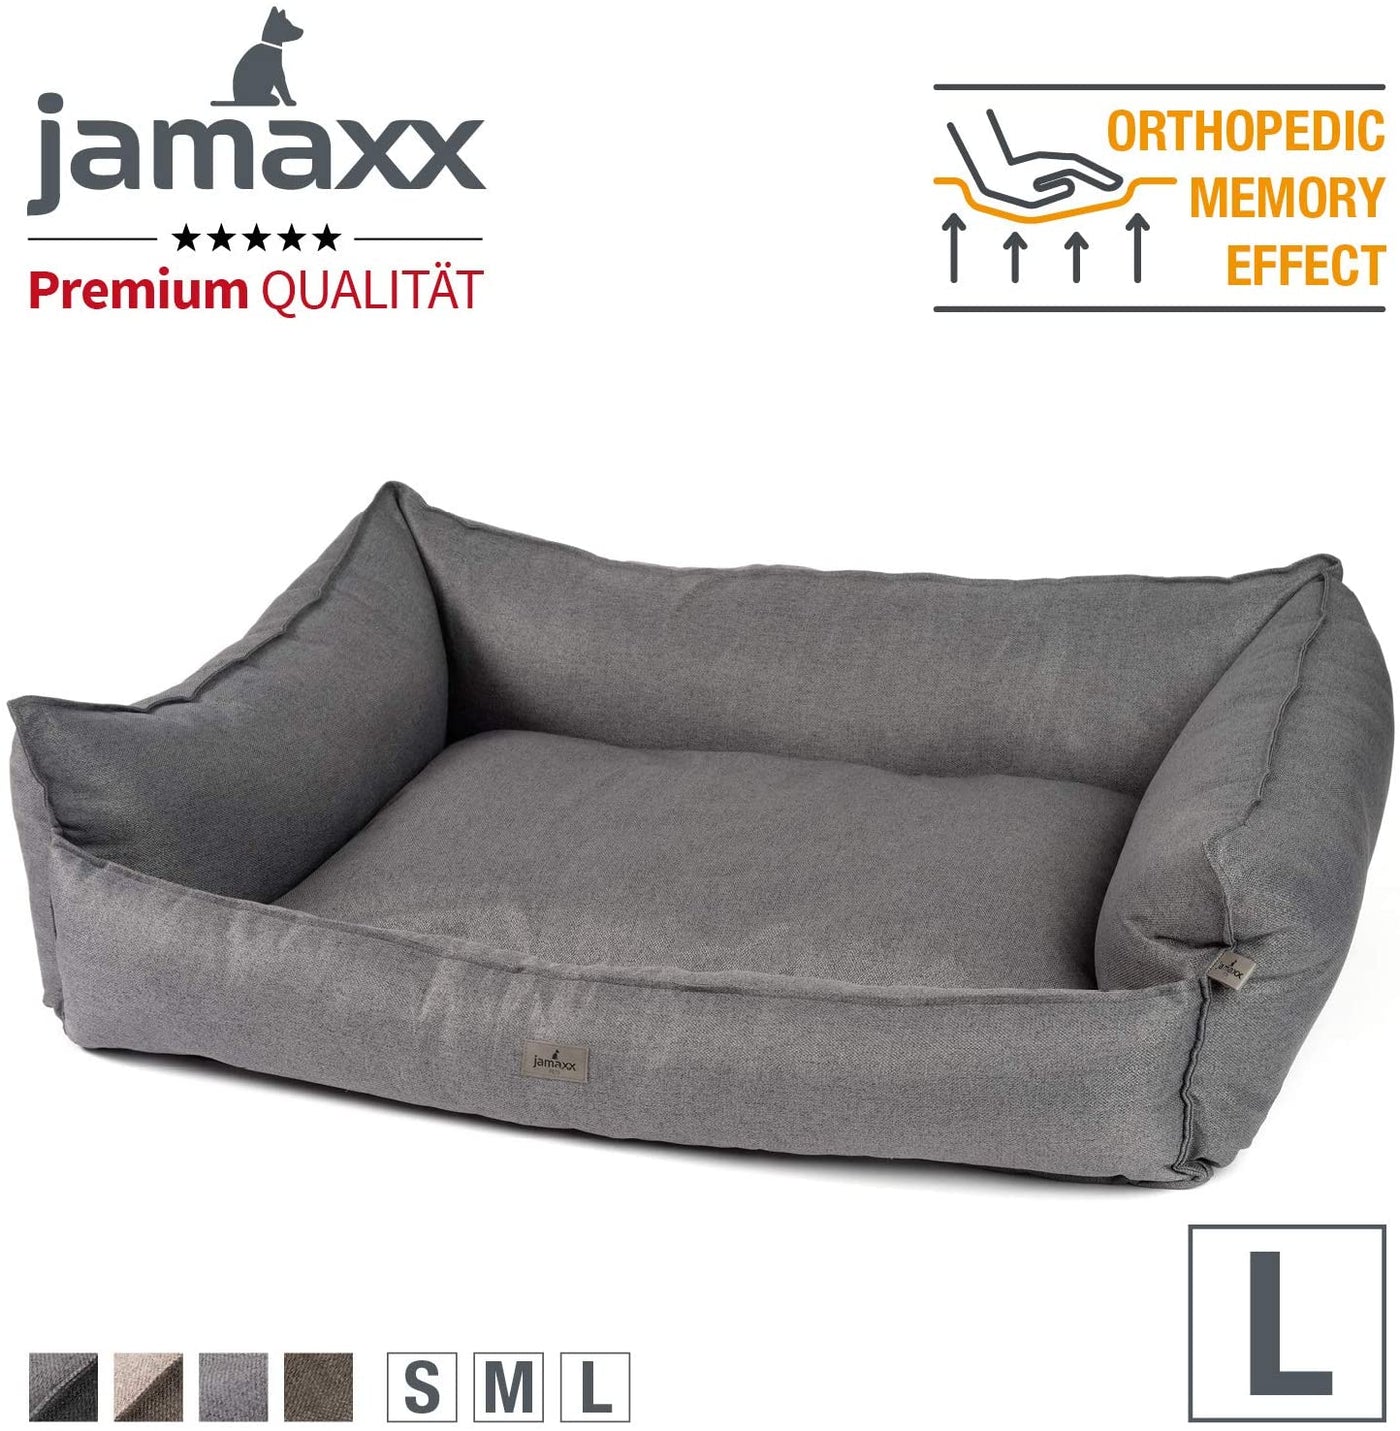 Hunde-Sofa aus hochwertigem OEKOTEX zertifizierten Stoff mit extra hohen Seiten gegen Zugluft und einer orthopädischen Schaumstofffüllung, Gr. L